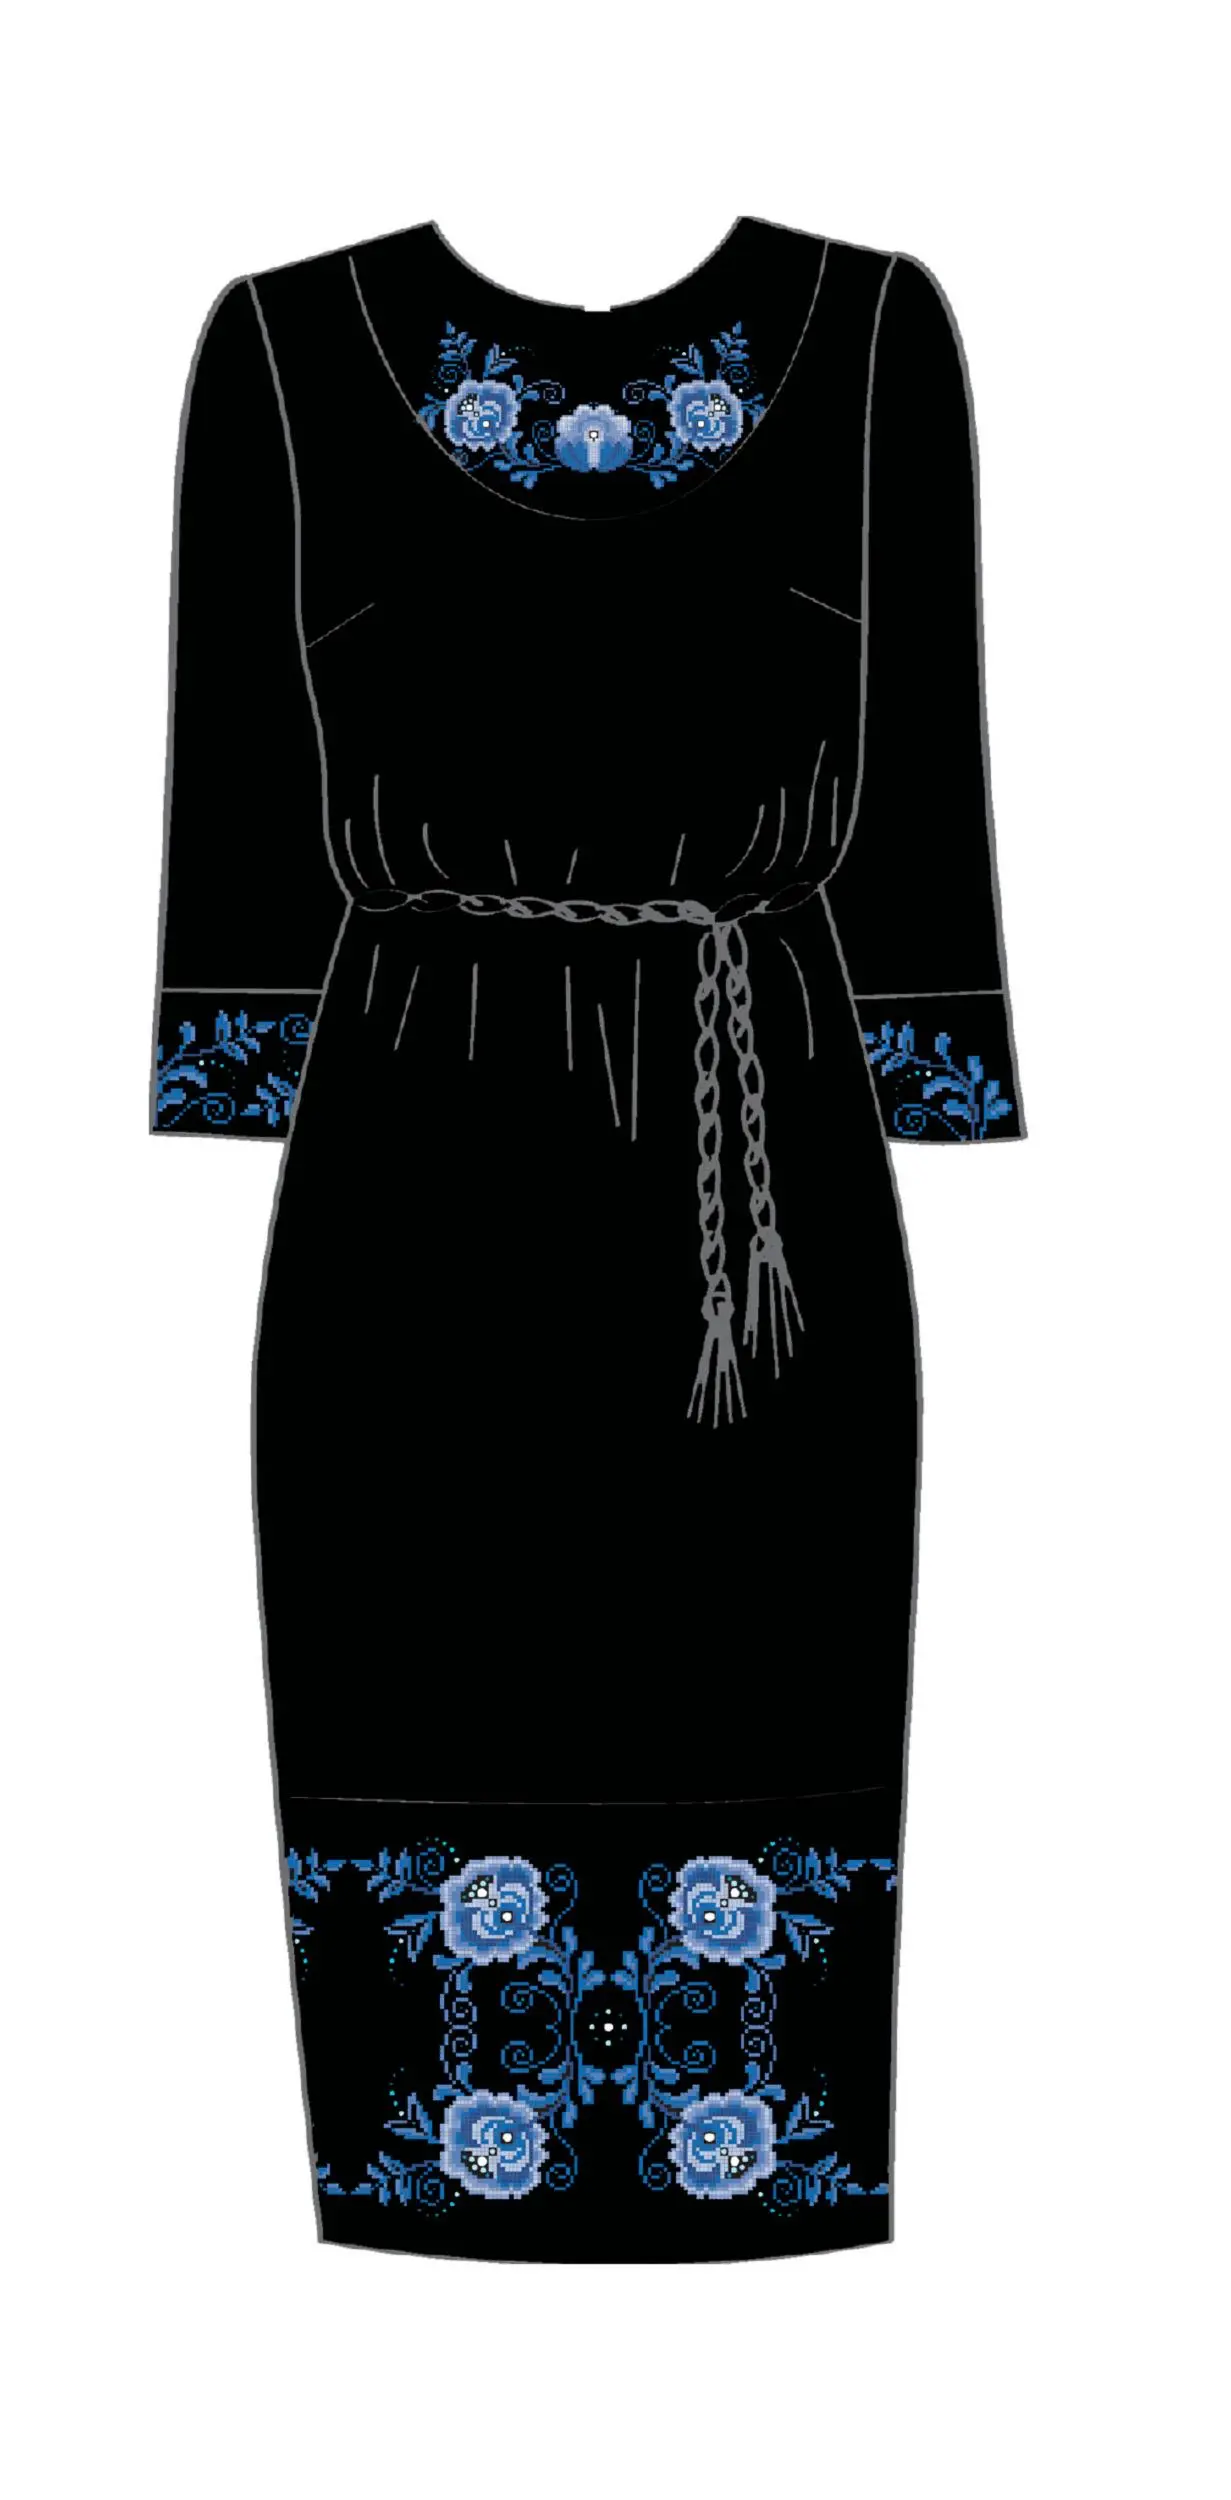 820-14/10 Плаття жіноче з поясом, чорне, розмір 48